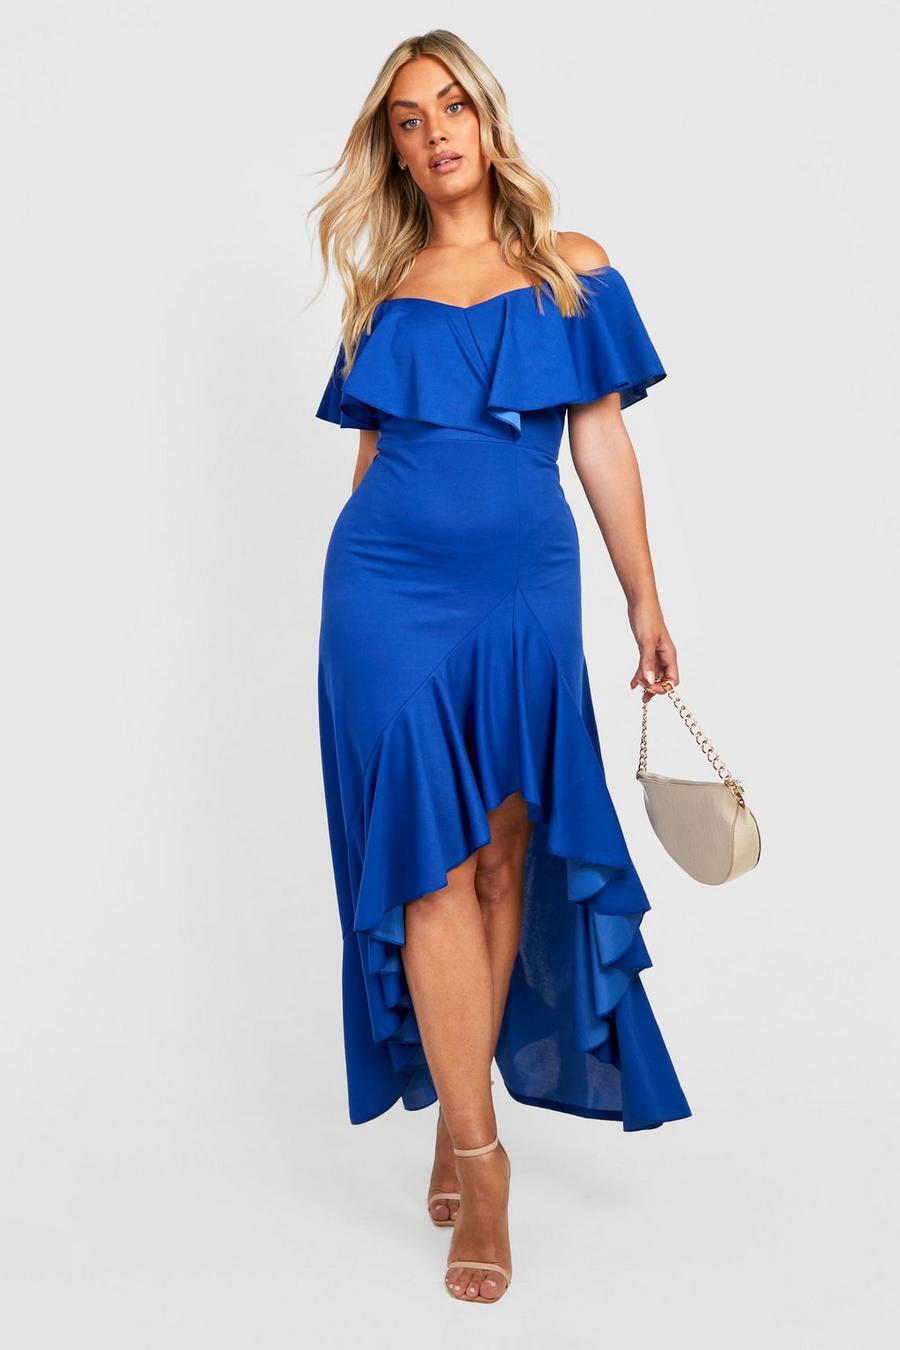 קובלט azul שמלת מקסי בסגנון ברדו עם שסע ברגל ומלמלה, מידות גדולות